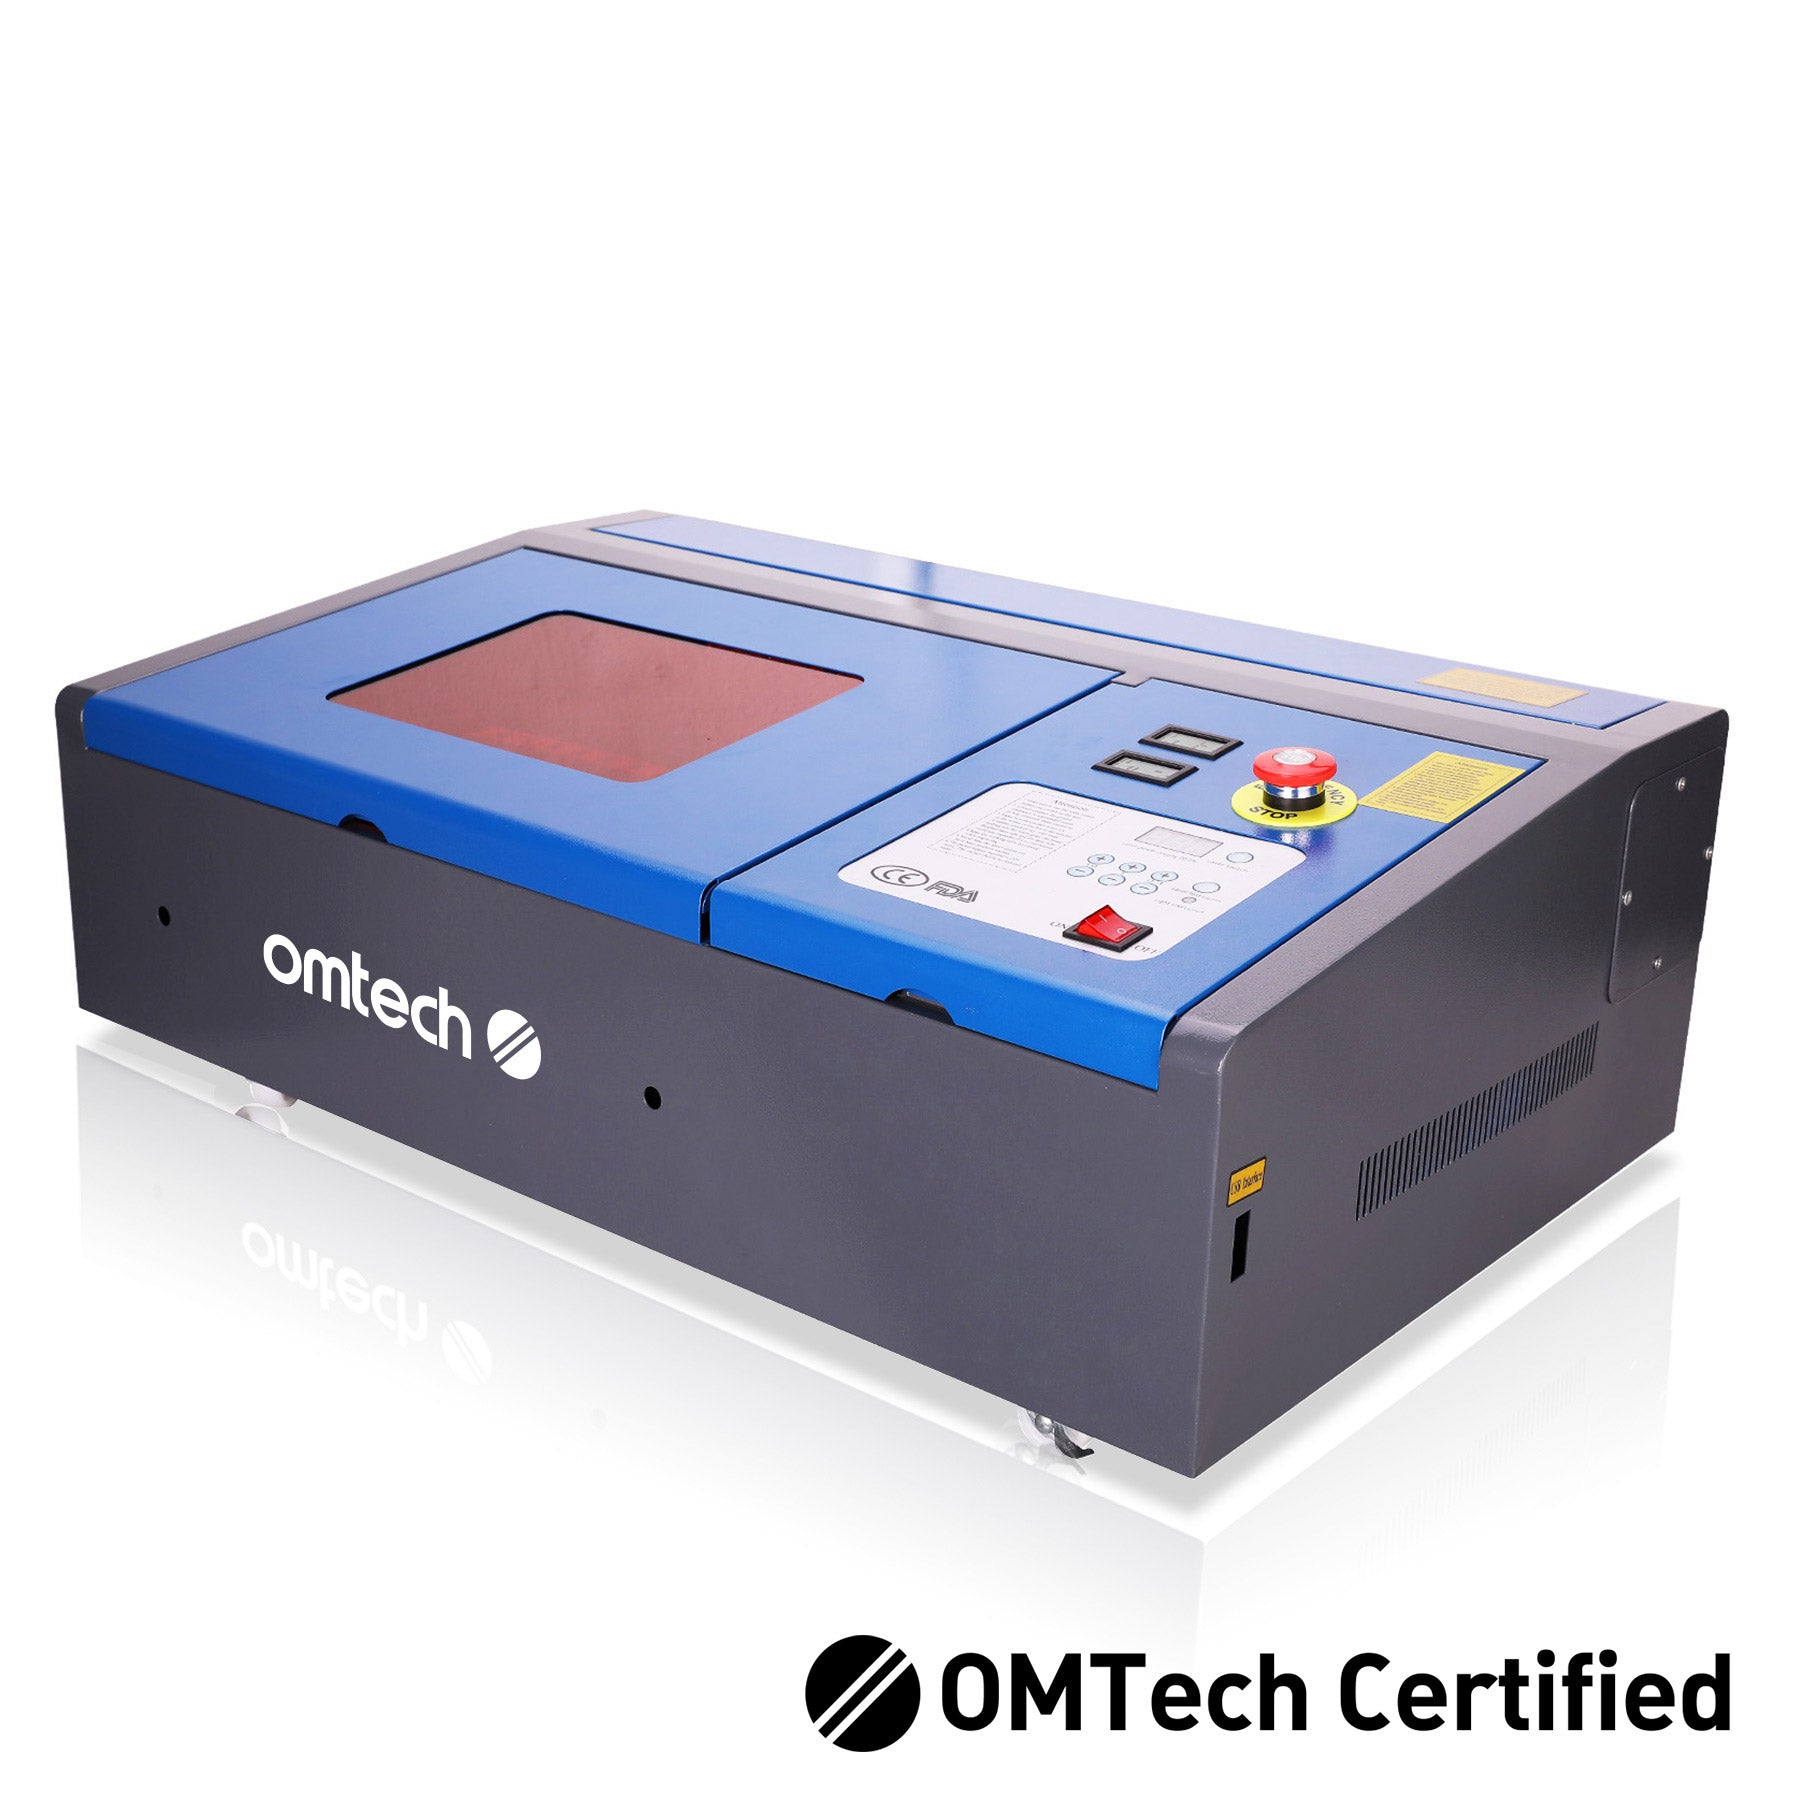 40W CO2 Laser Engraver - Refurbished Laser Engraver - OMTech